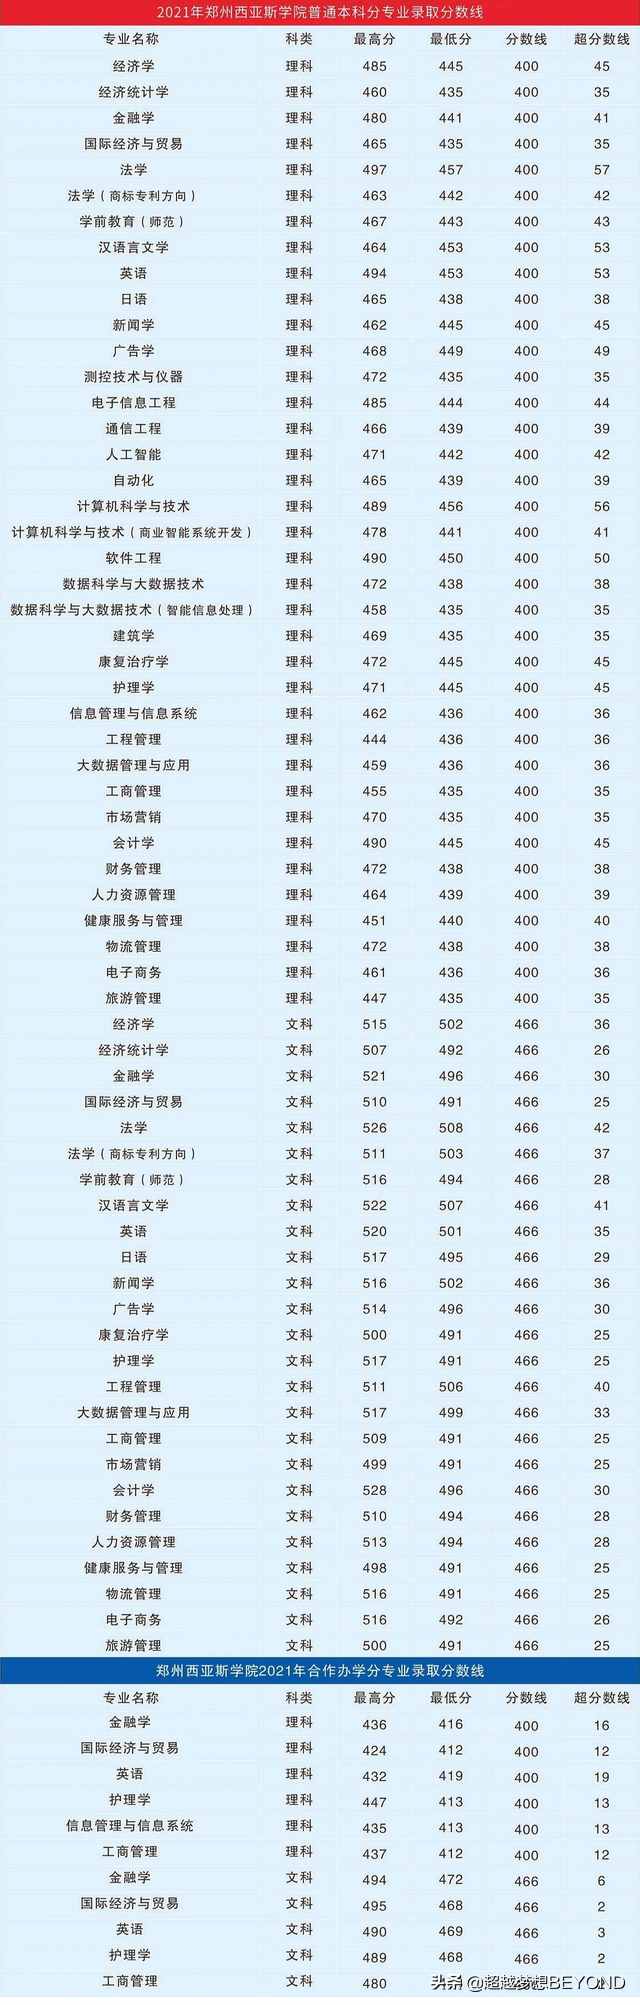 郑州西亚斯学院2021年河南省各专业录取分数统计